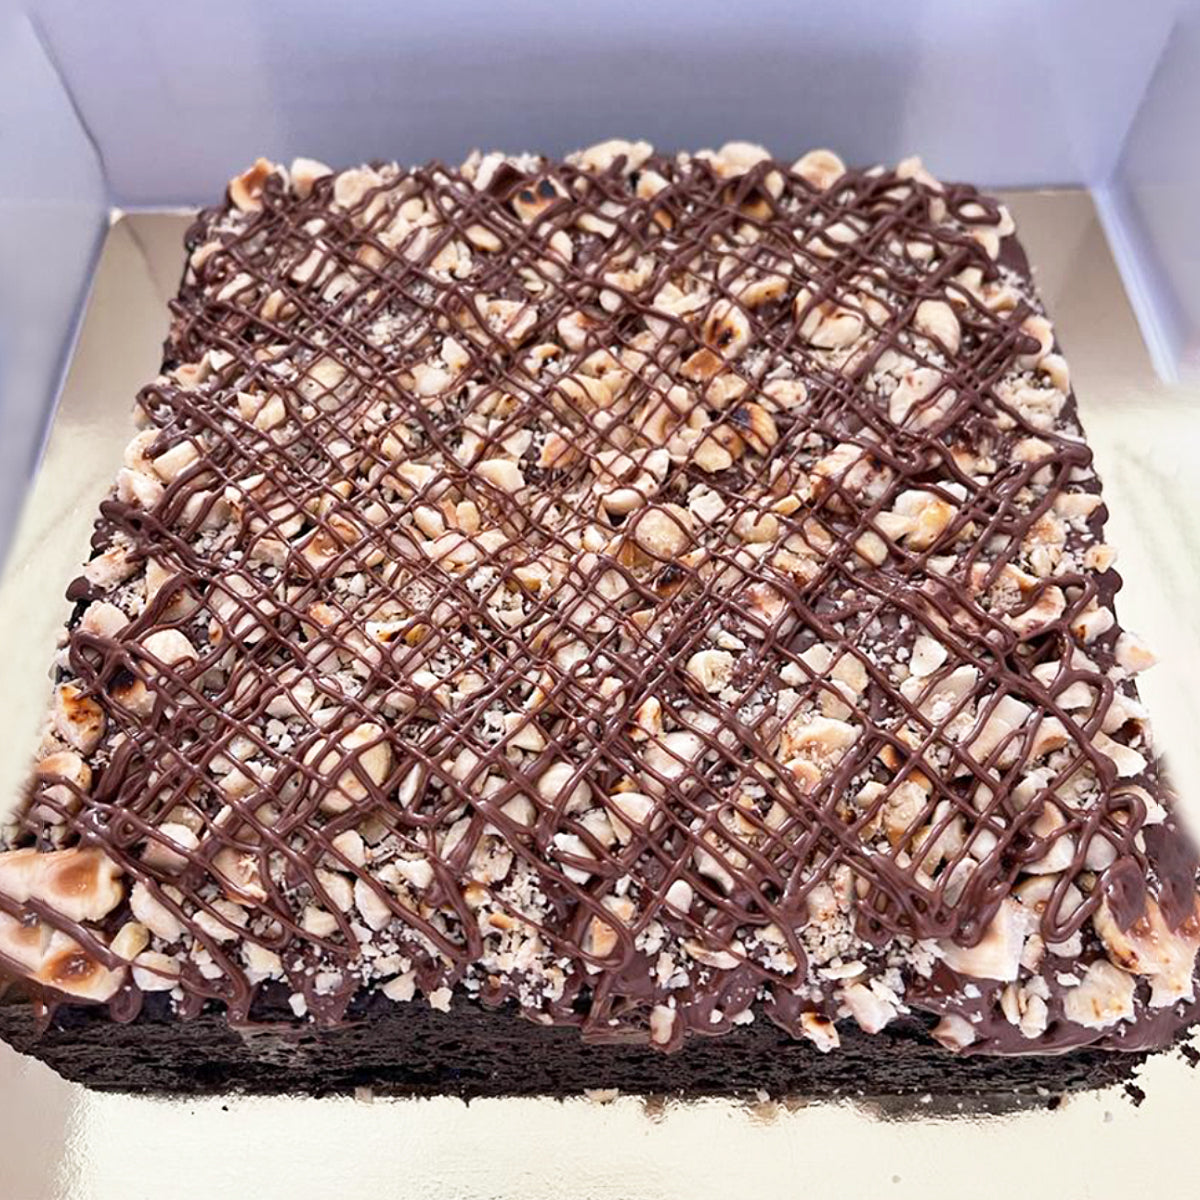 Buy/Send Fudge Brownie Cake Half kg Online- FNP